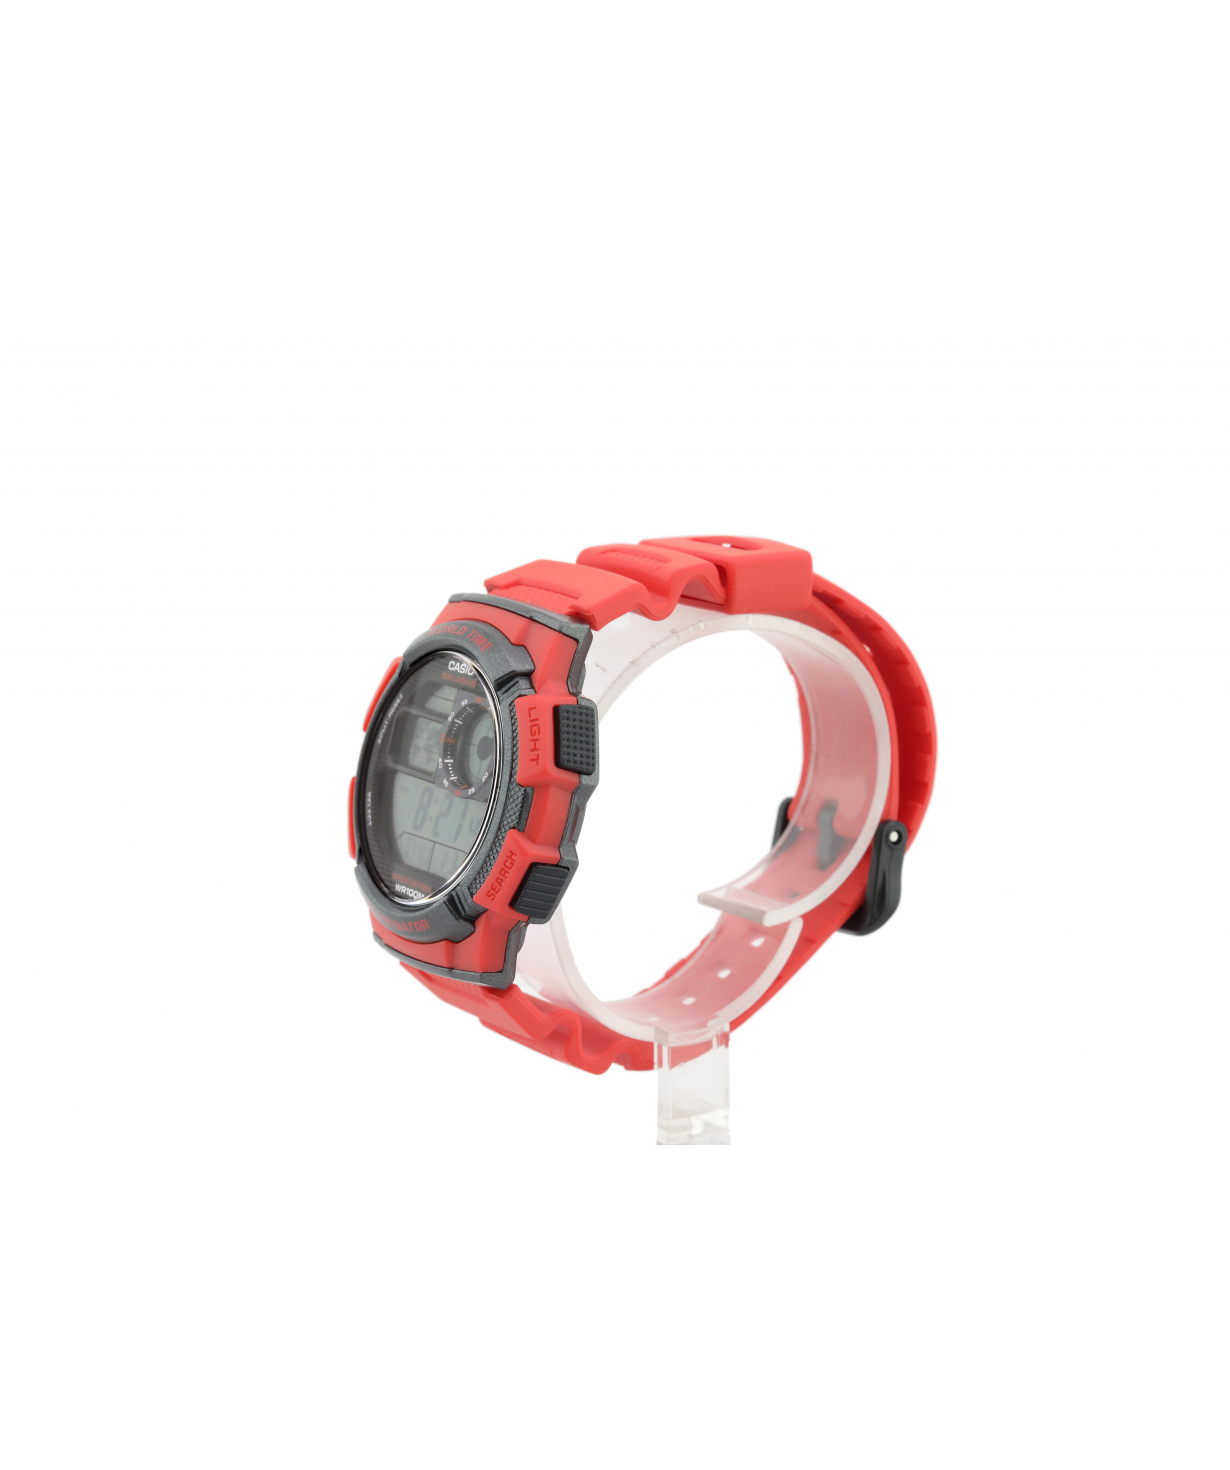 Wristwatch `Casio` AE-1000W-4AVDF